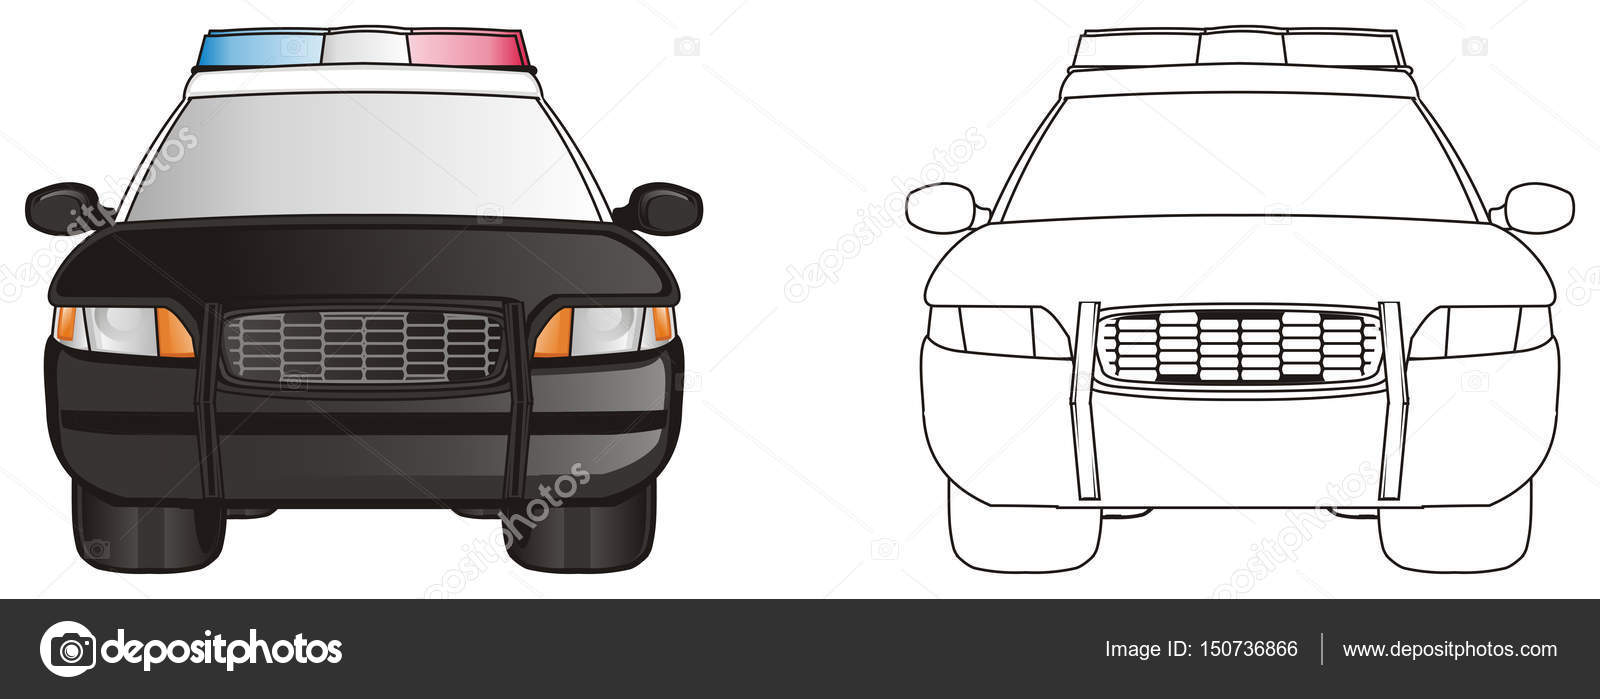 Auto della polizia colorate con disegni da colorare auto polizia — Foto di tatty77tatty